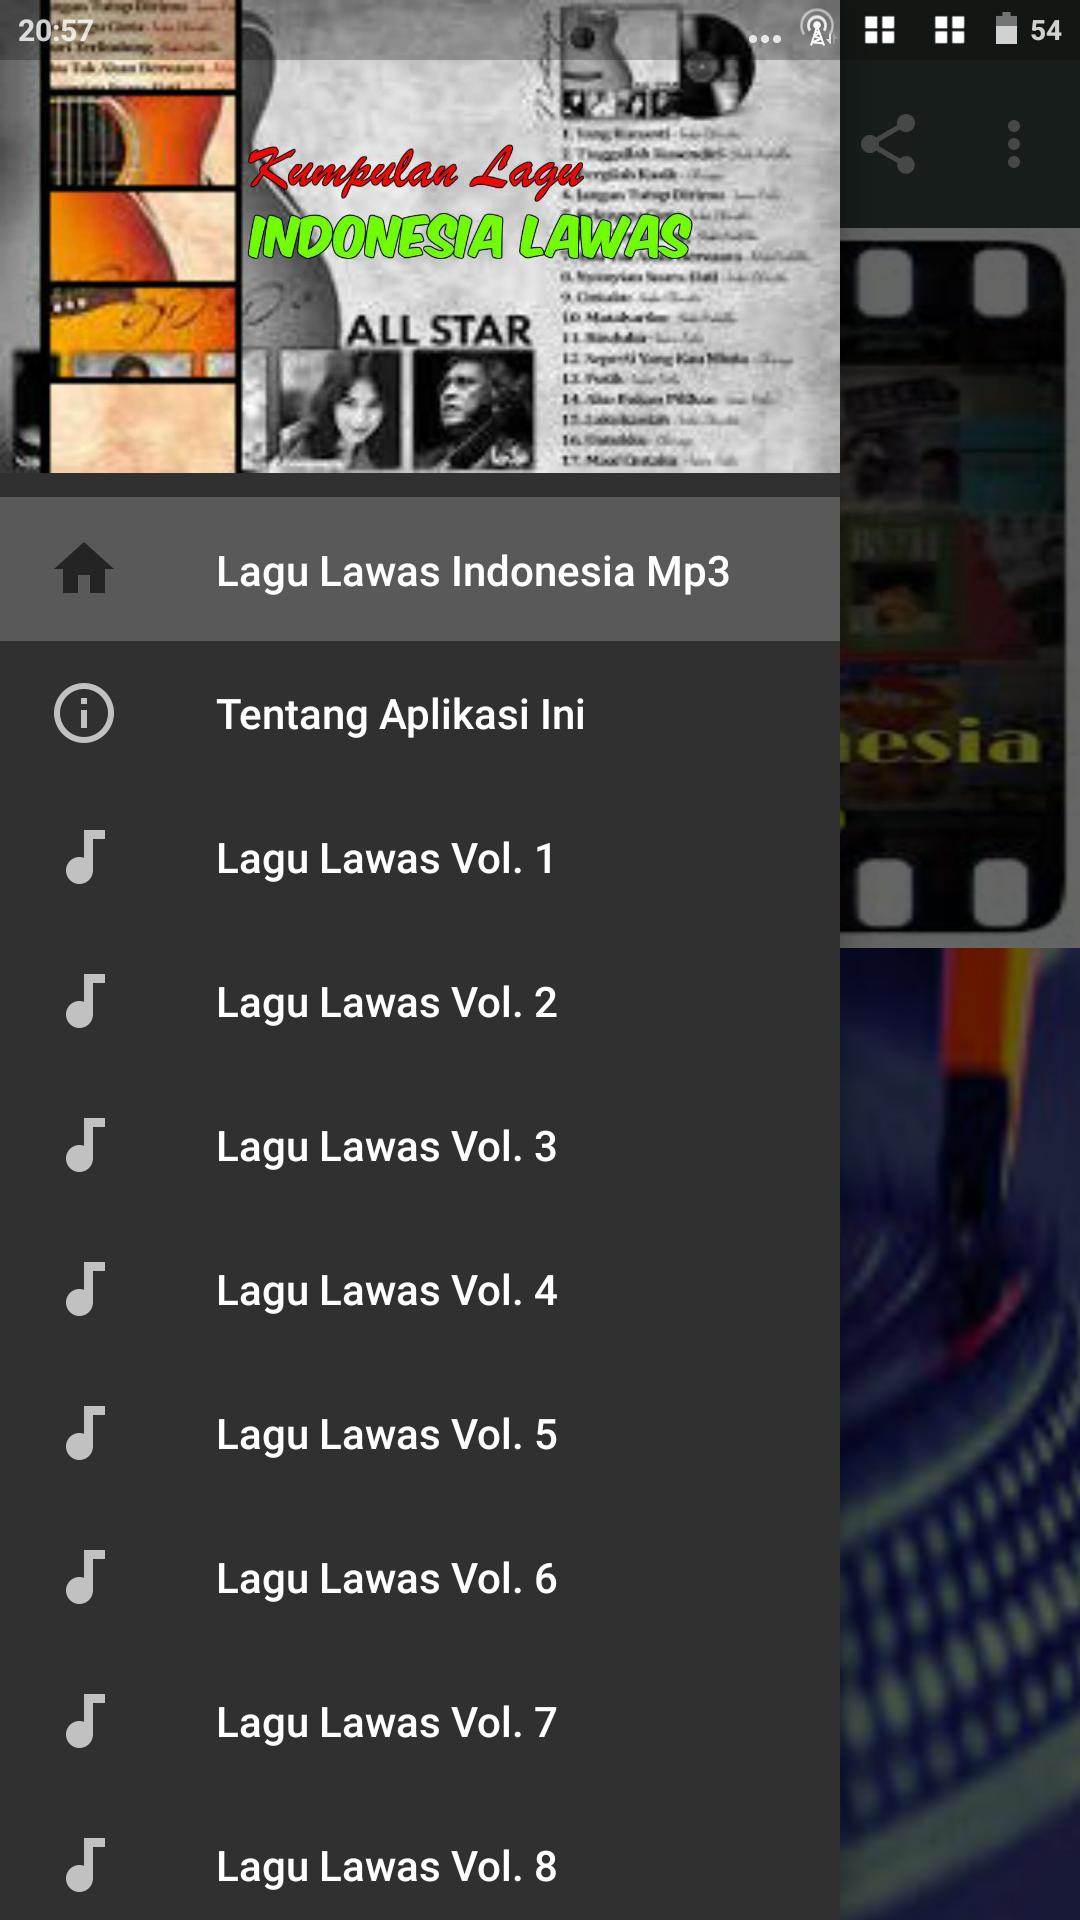 Lagu Lawas Indonesia Mp3 Lengkap for Android - APK Download